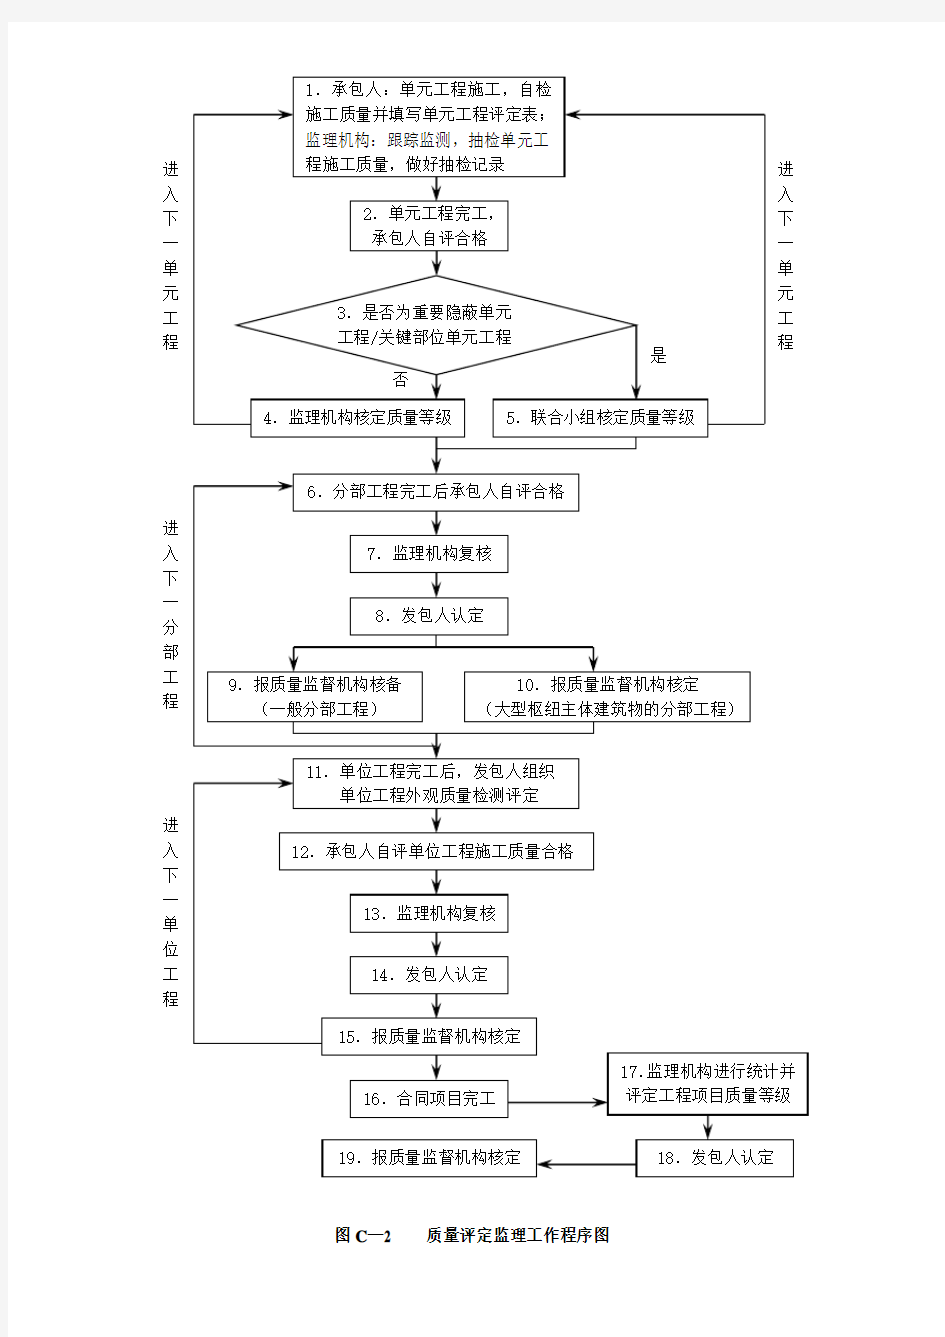 水利工程施工监理规范(SL288-2014)中施工监理主要工作程序框图